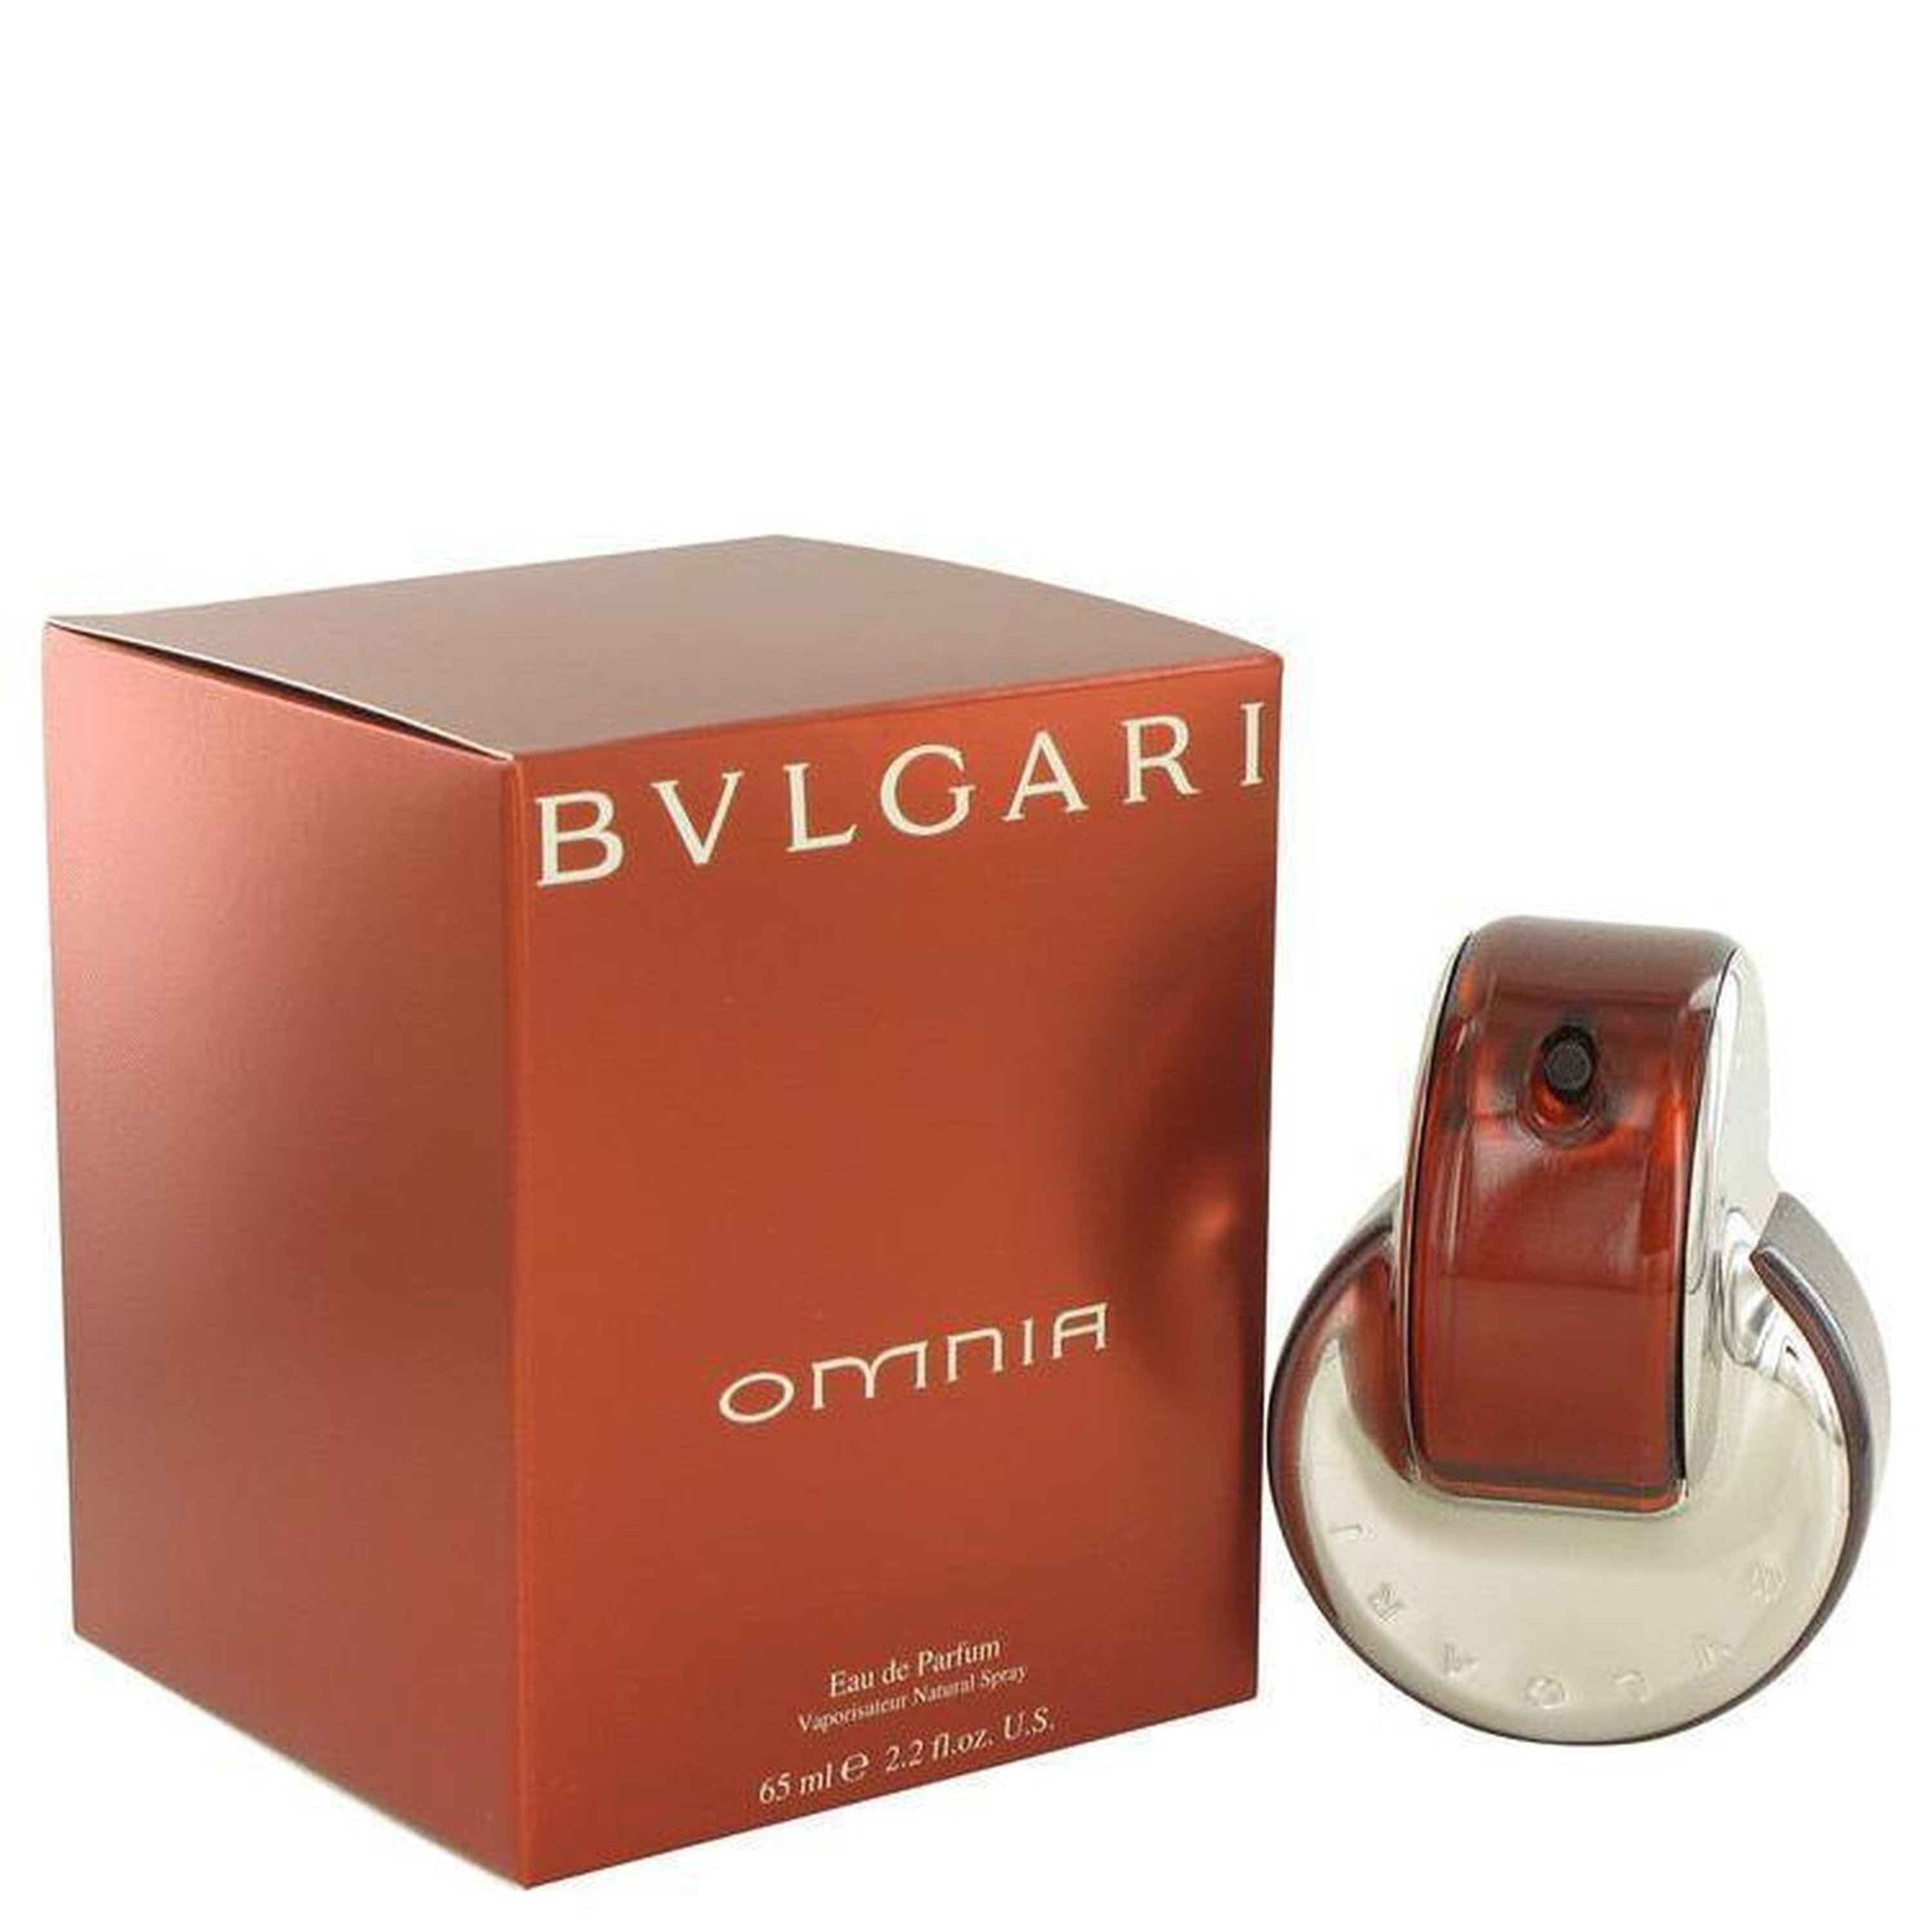 Bvlgari Omnia By  Eau De Parfum Spray 2.2 oz